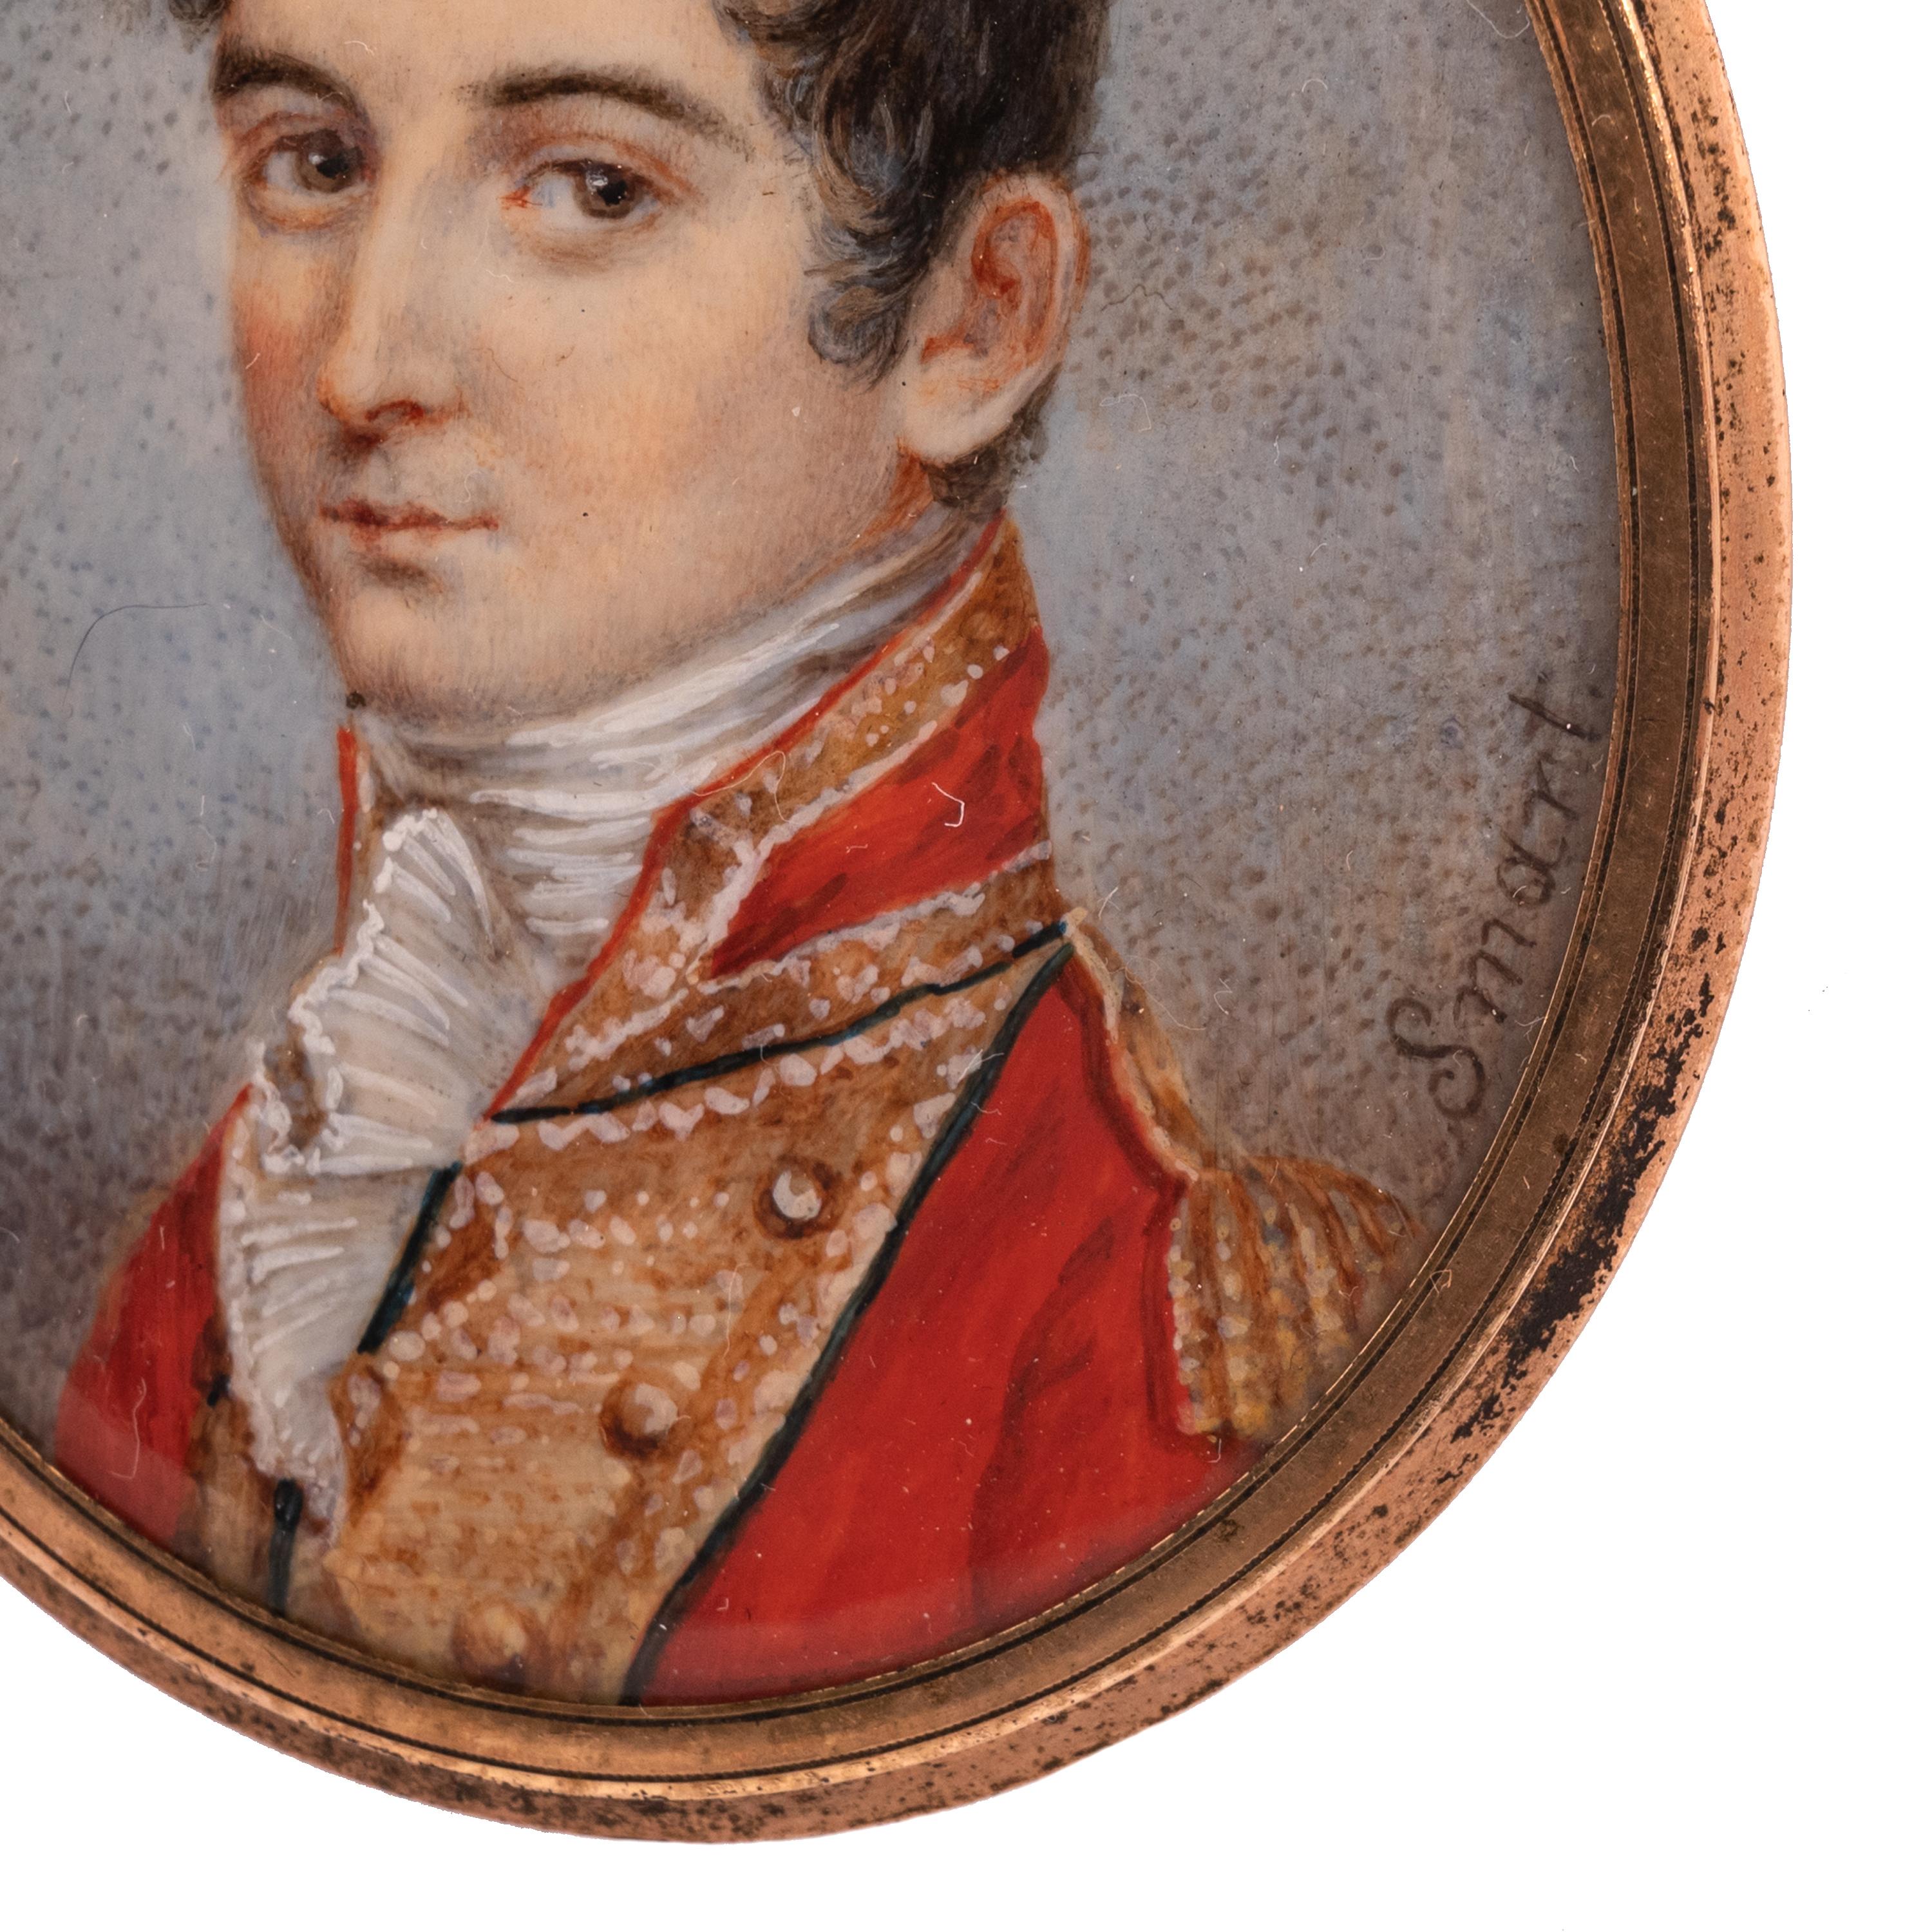 Ein feines antikes Miniatur-Porträtgemälde, John Smart (1741-1811). Das Gemälde um 1780.
Eine sehr schöne Porträtminiatur eines jungen Offiziers, gemalt auf einer Elfenbeinplatte und signiert 